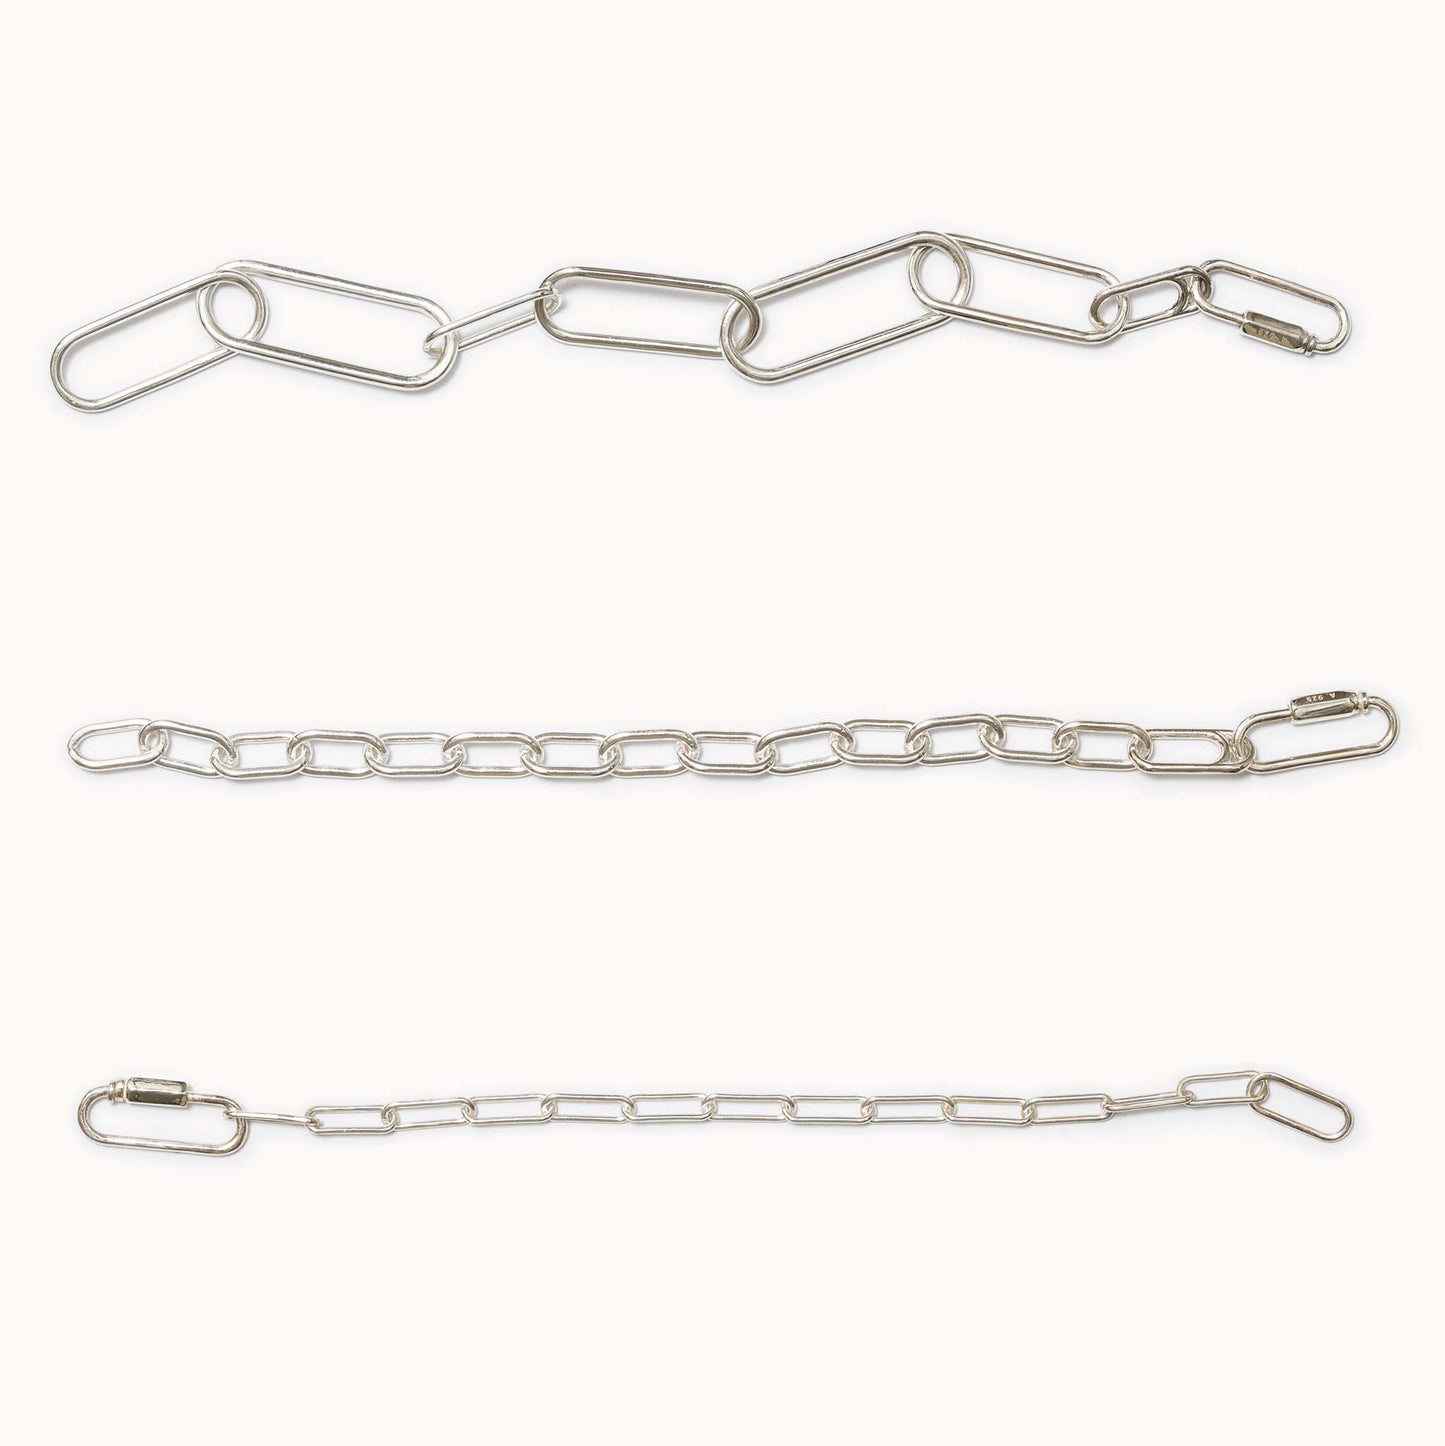 Chain Bracelet with Karabiner カラビナチェーンブレスレット S